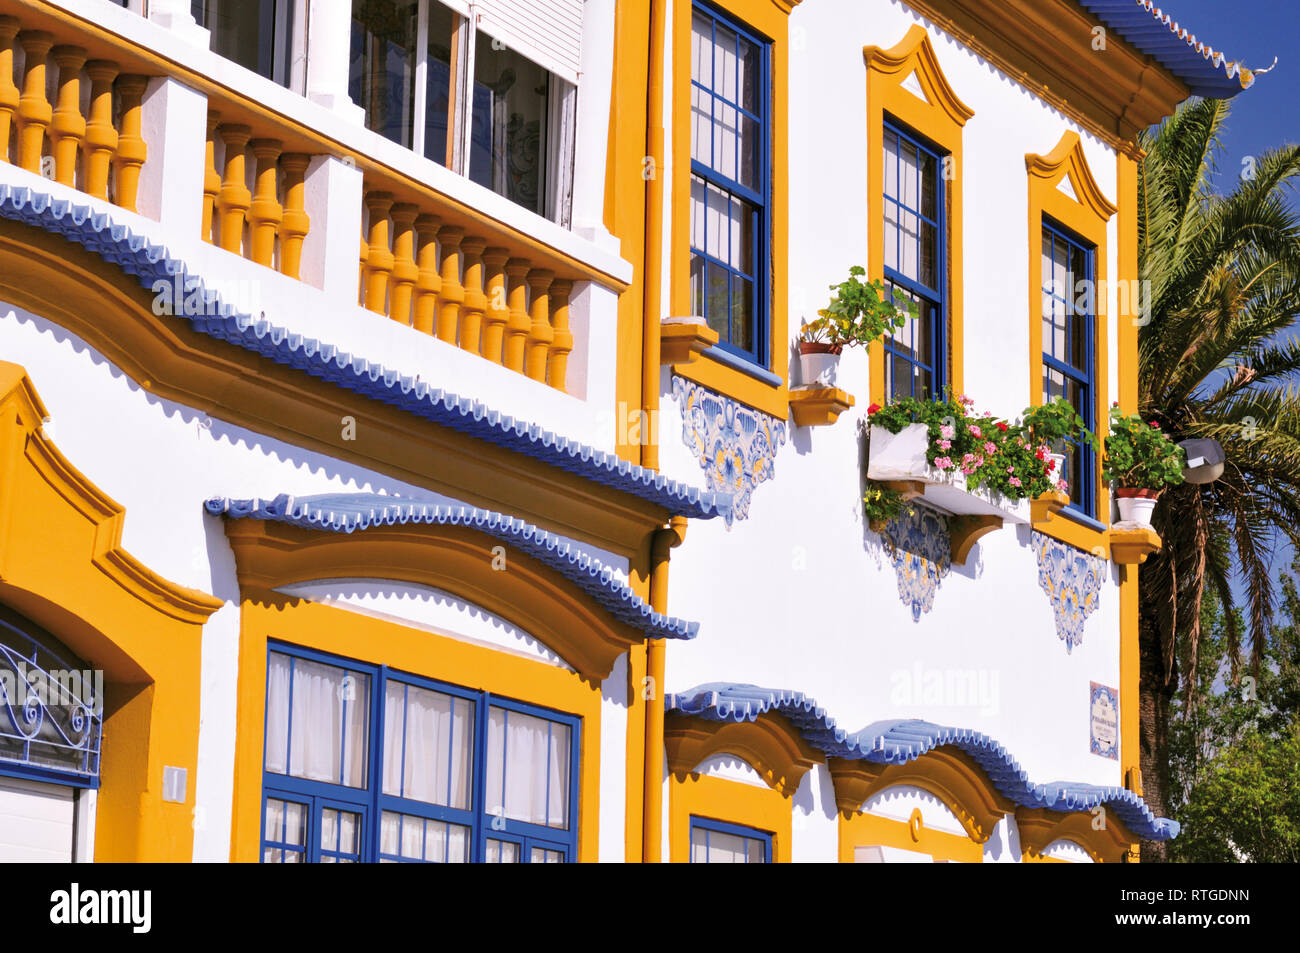 Detalle de la fachada de la casa colorida con amarillo y azul de windows Foto de stock